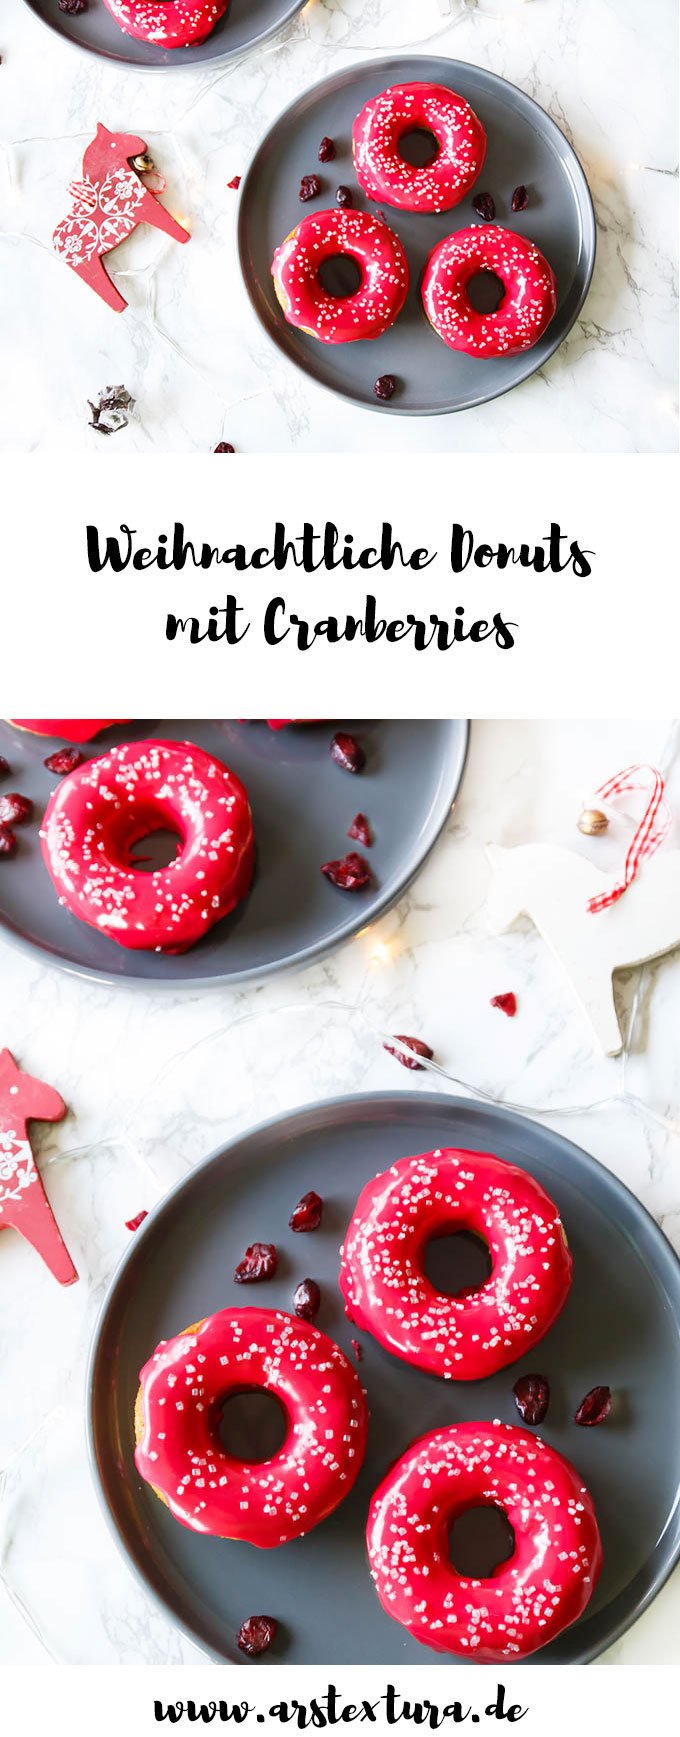 Weihnachtliche Donuts mit Cranberries backen - Weihnachtsrezept | ars textura - Food-Blog